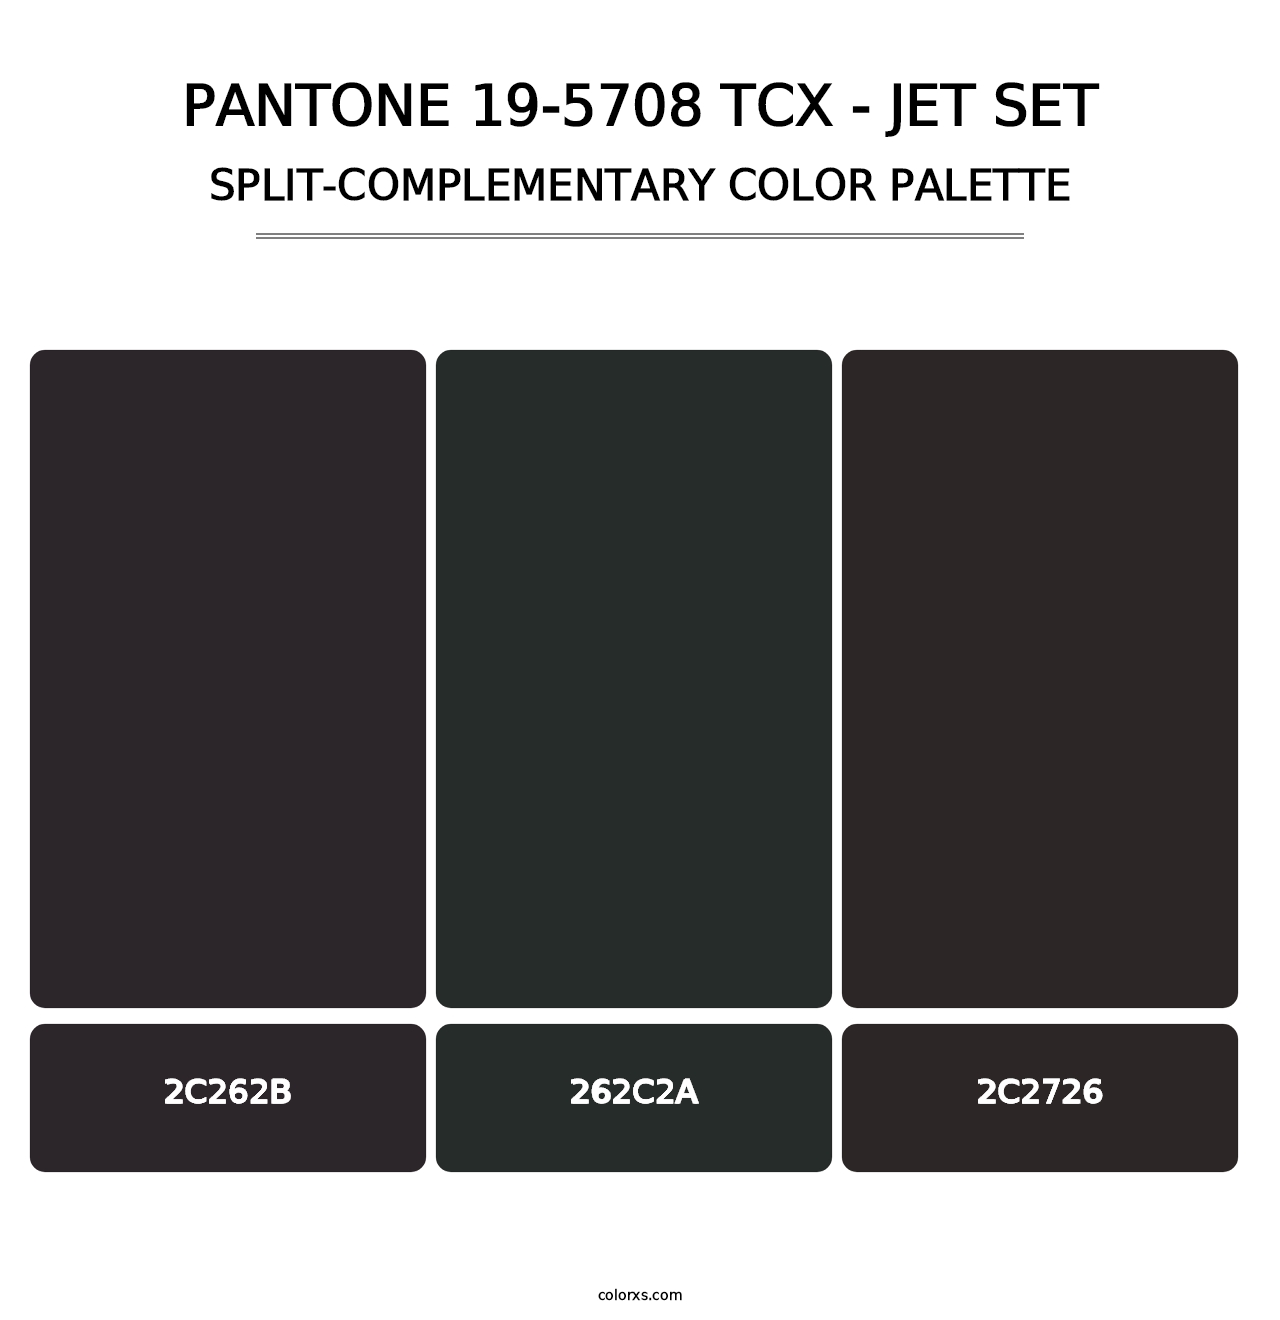 PANTONE 19-5708 TCX - Jet Set - Split-Complementary Color Palette